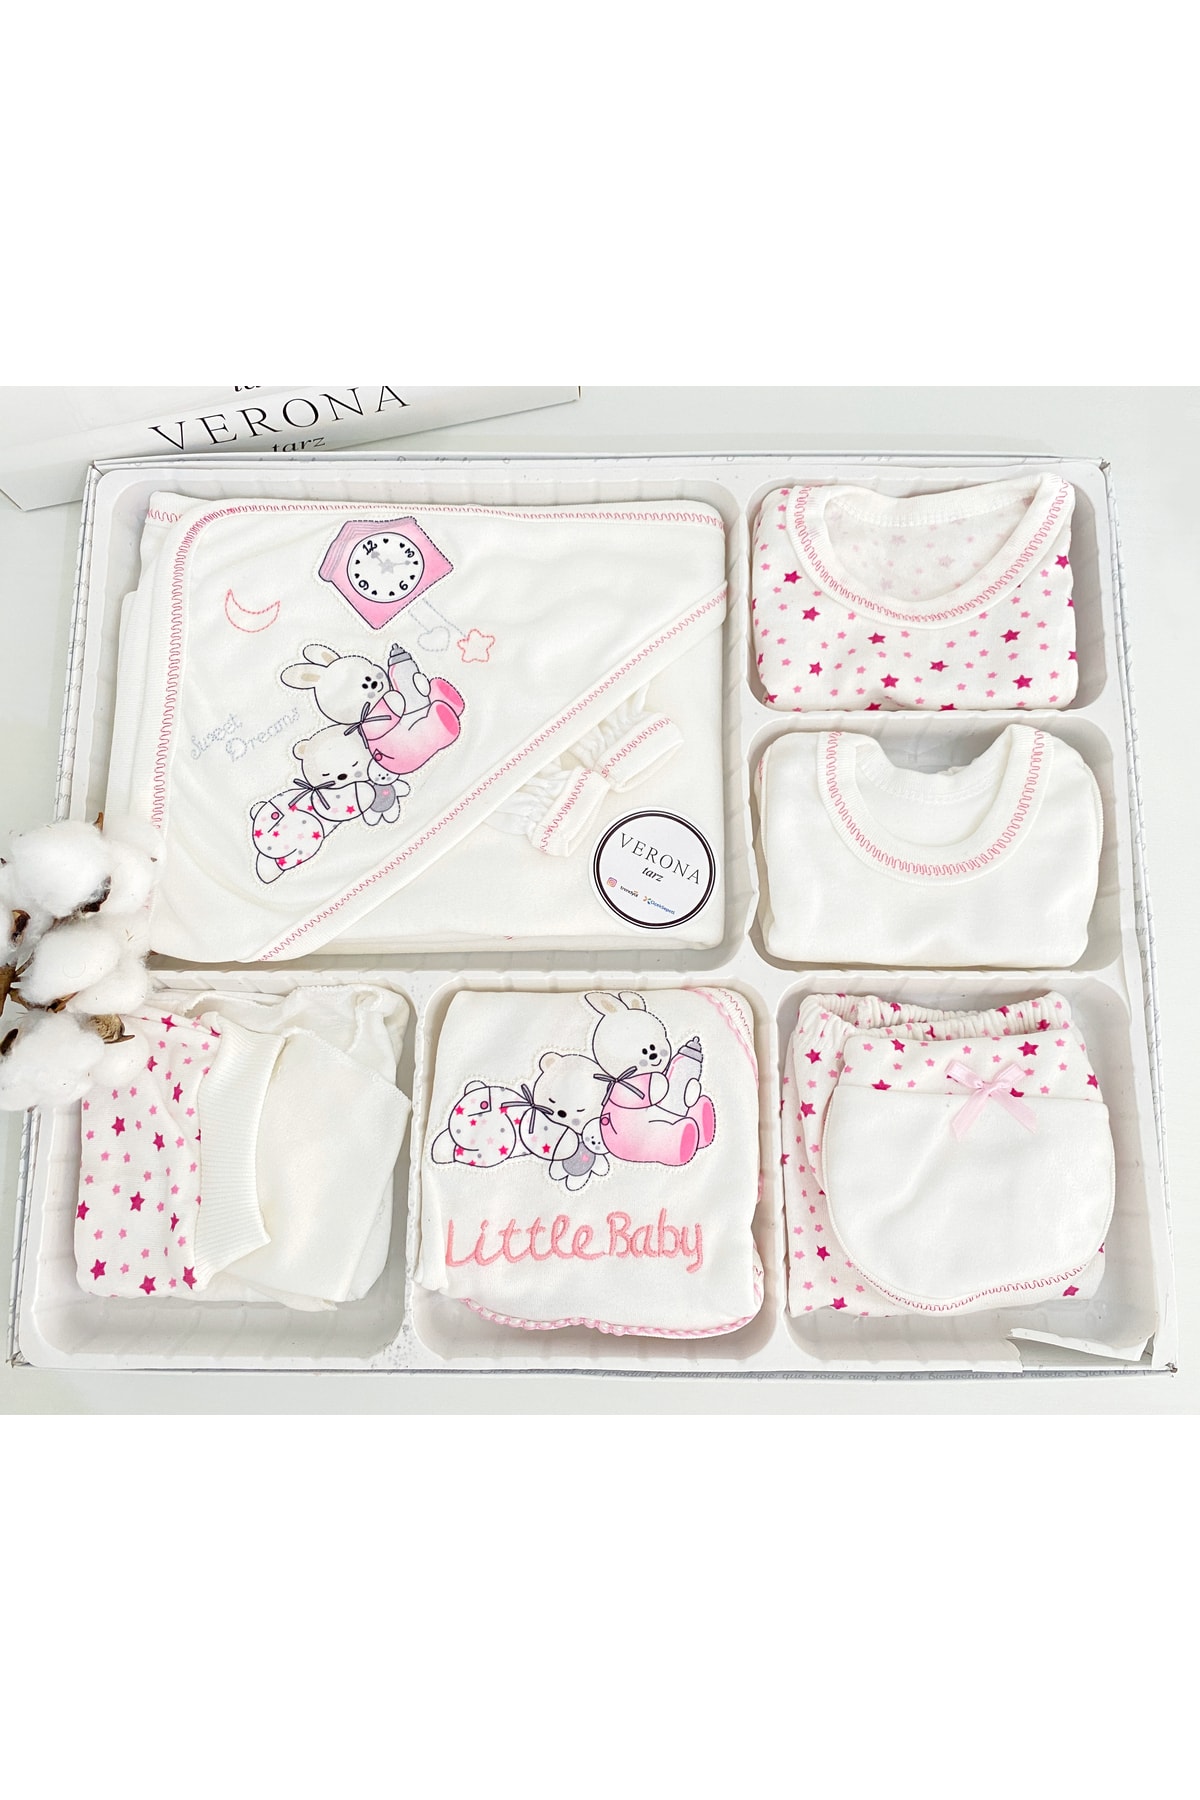 VERONA TARZ 11 Parça Tavşan Nakışlı 11’li Hastane Çıkışı Kız Erkek Bebek Yeni Doğan Kıyafeti Zıbın Set